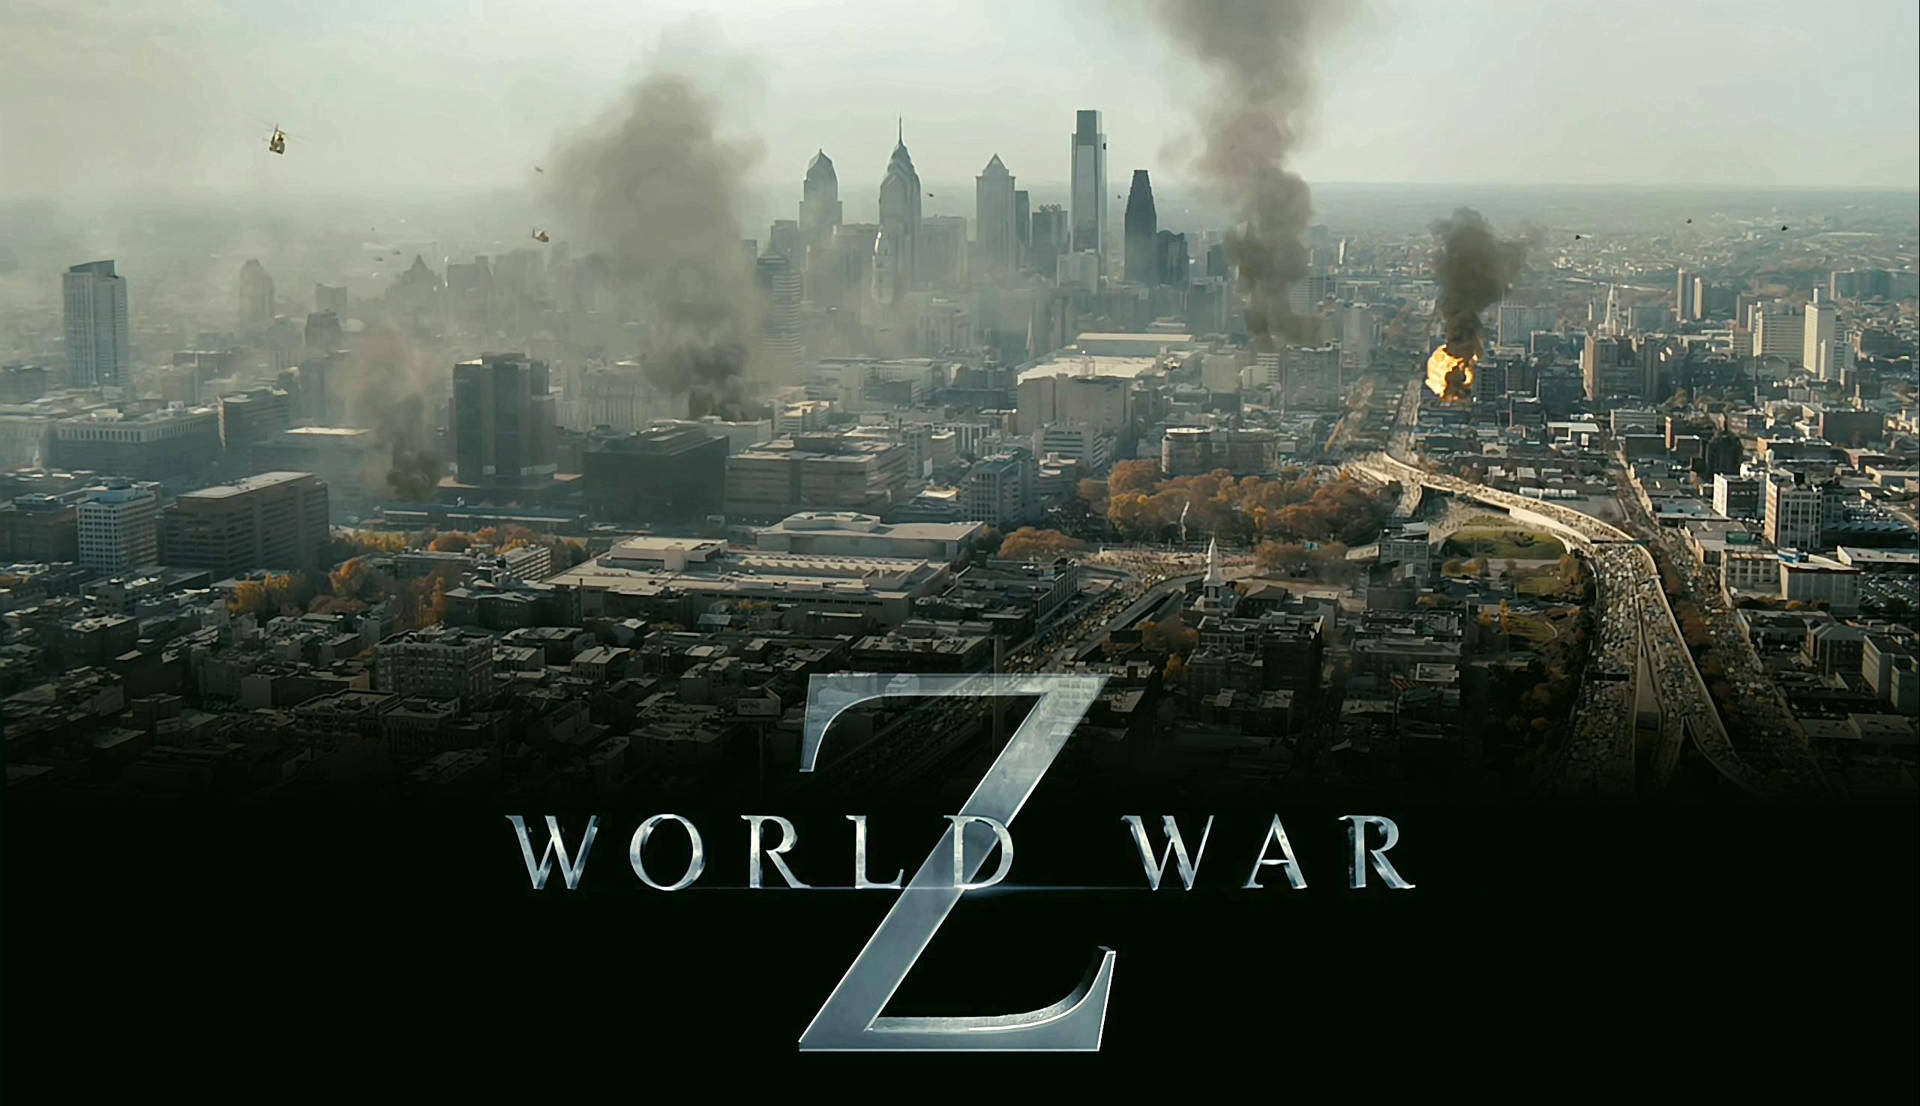 World War Z Chaos Poster